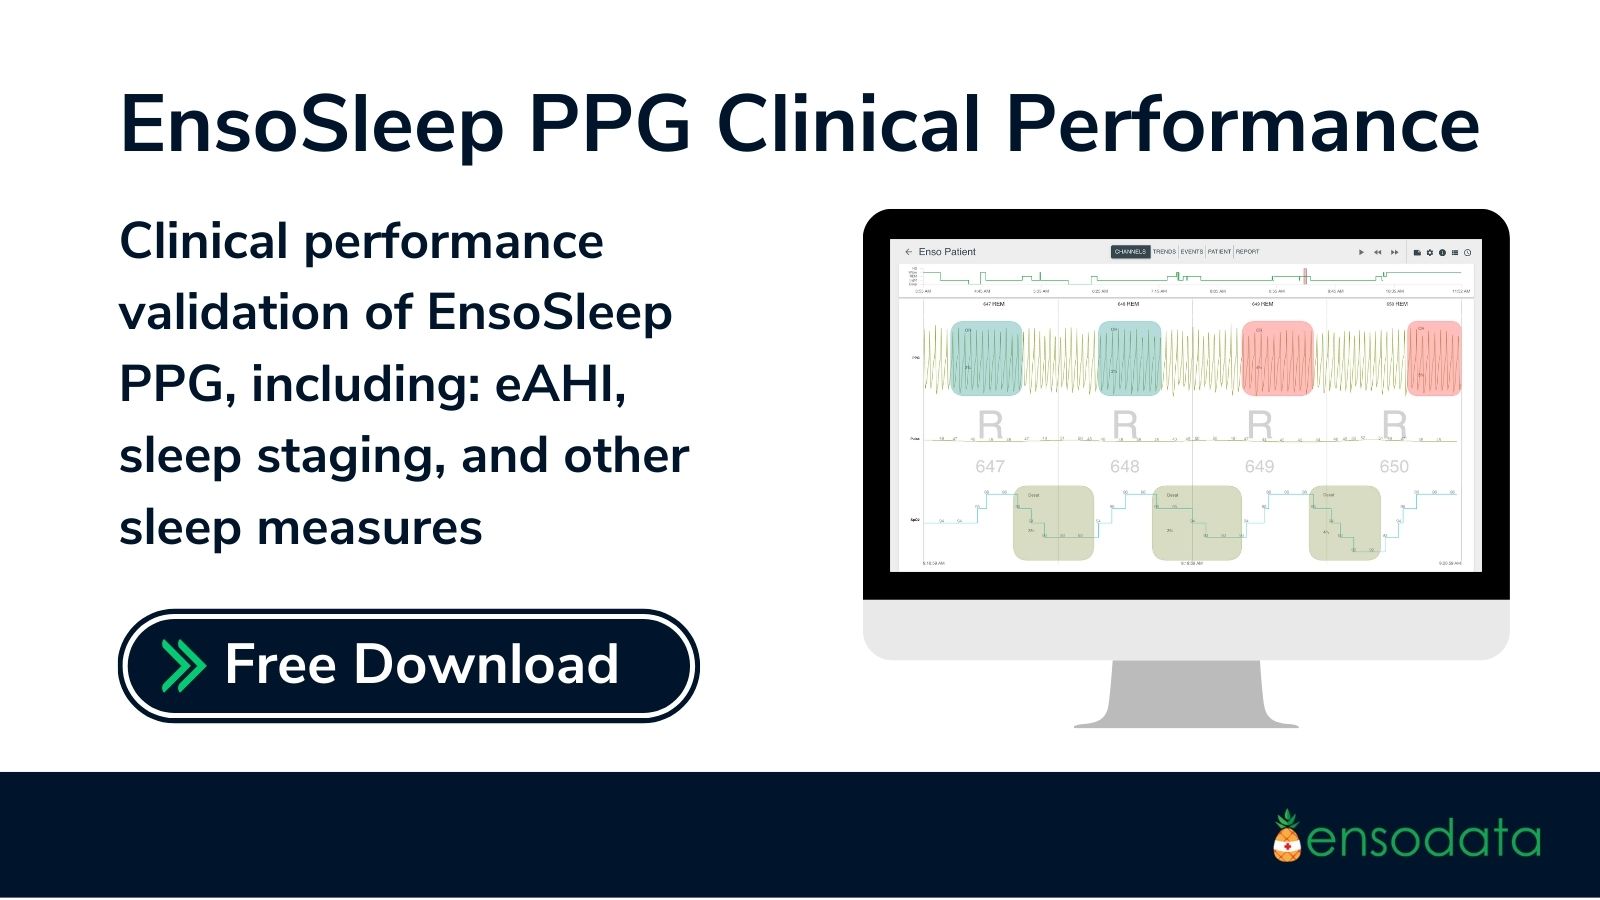 EnsoSleep PPG Clinical Performance